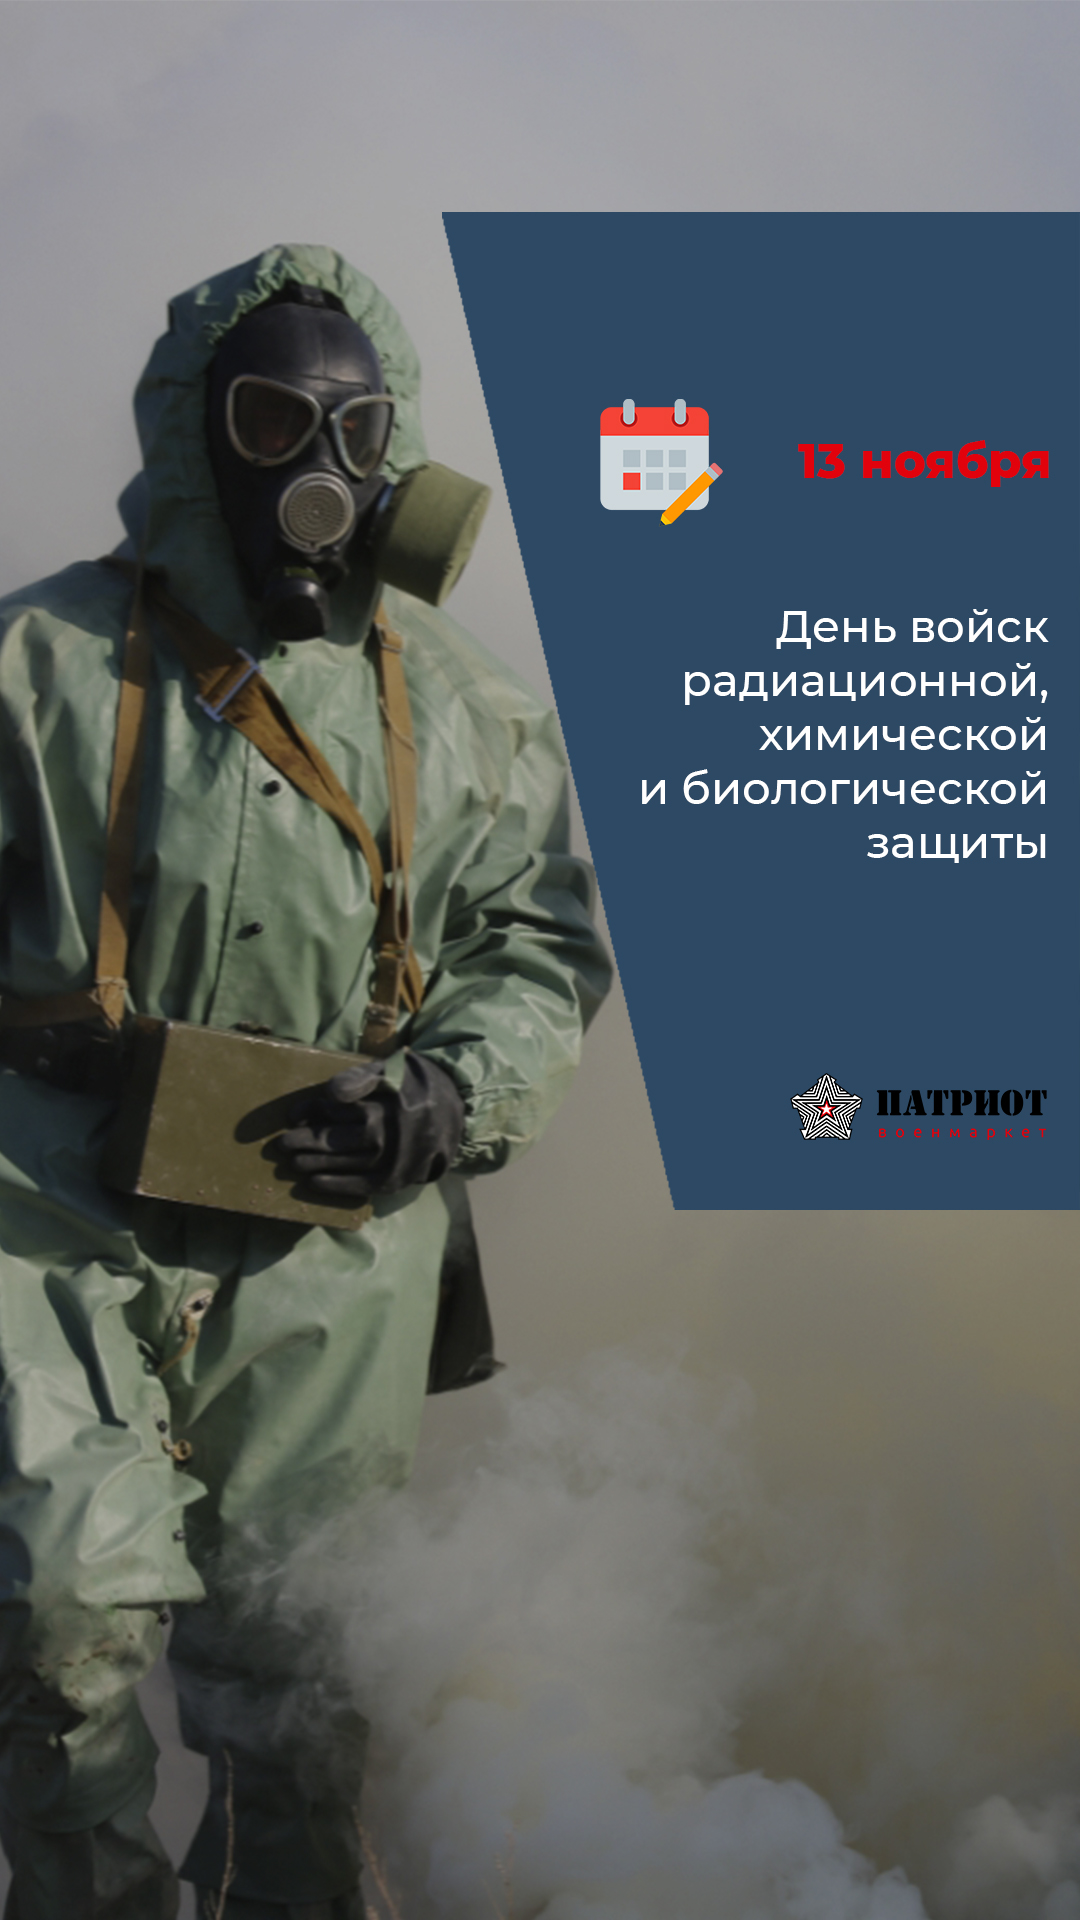 13 ноября – День войск радиационной, химической и биологической защиты